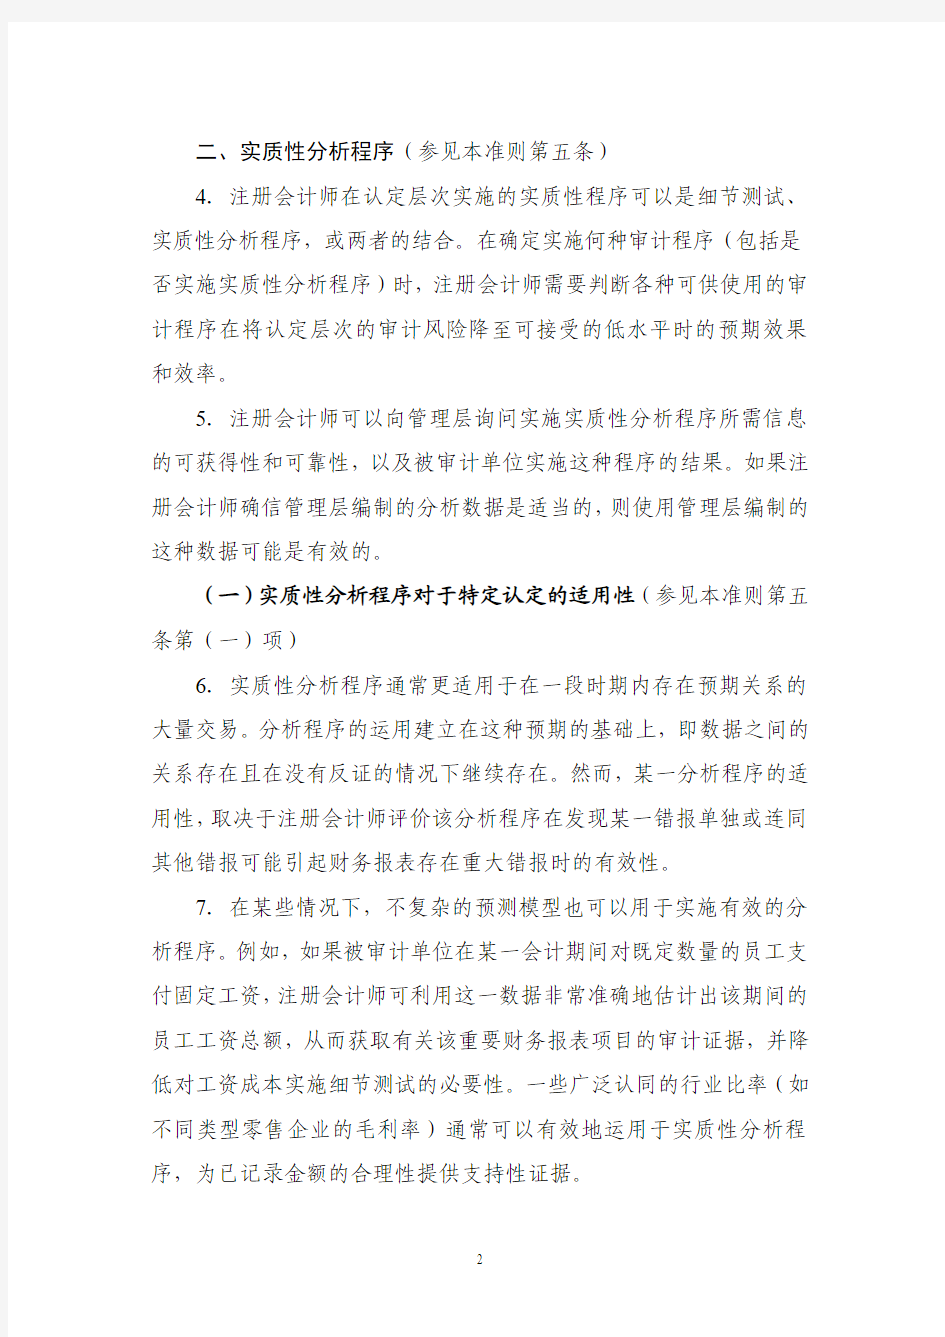 《中国注册会计师审计准则第1313号——分析程序》应用指南2010